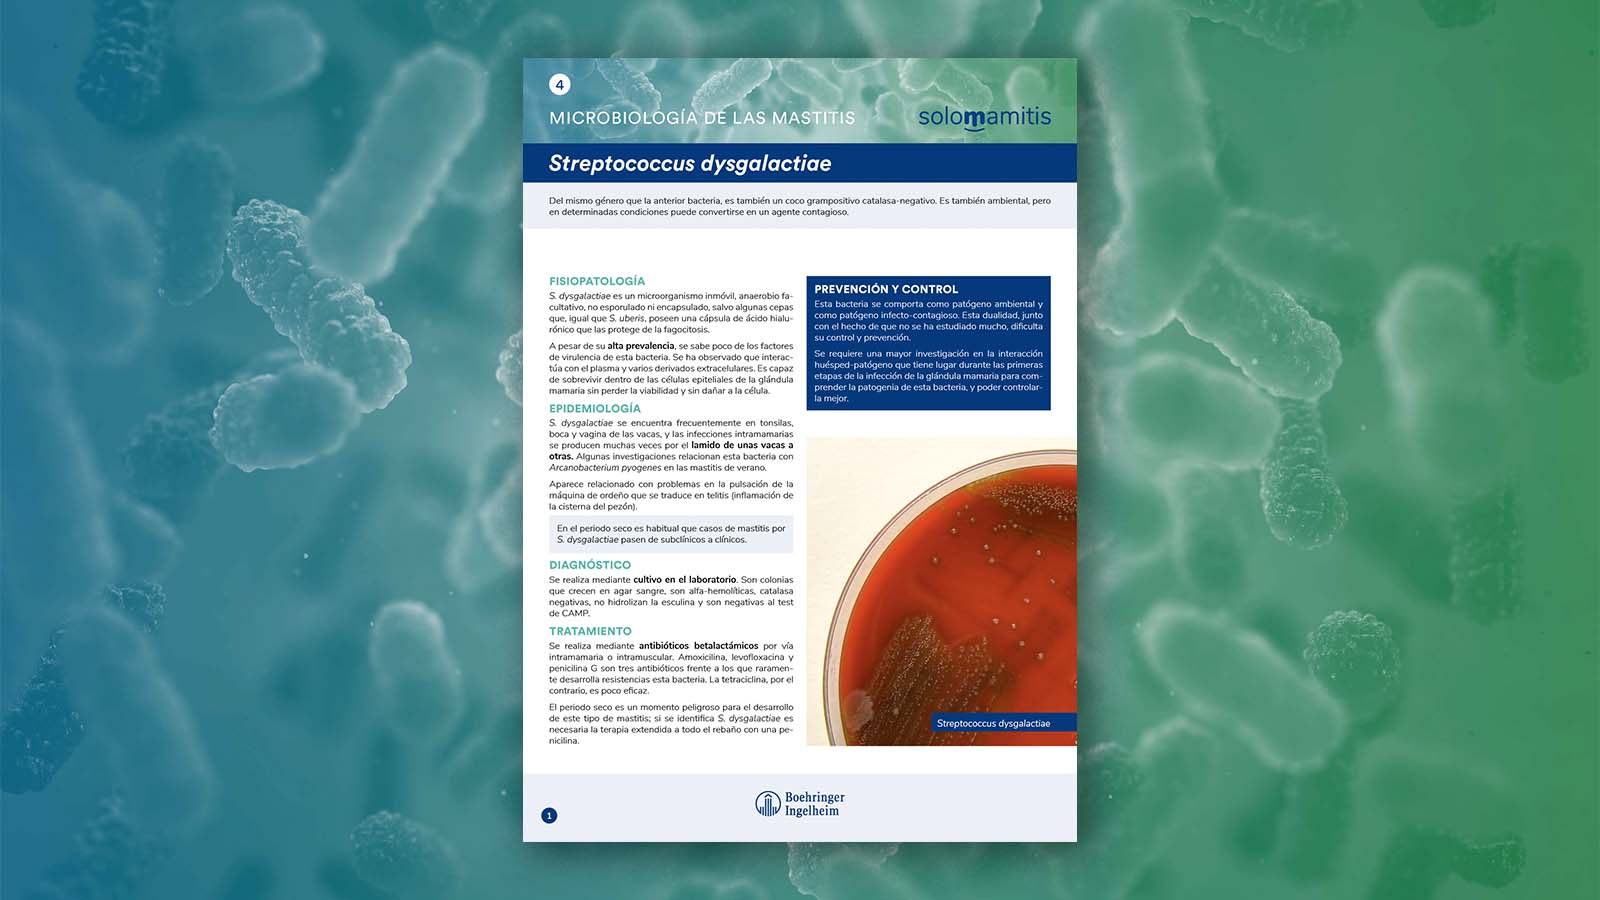 Microbiología de las mastitis: Streptococcus dysgalactiae